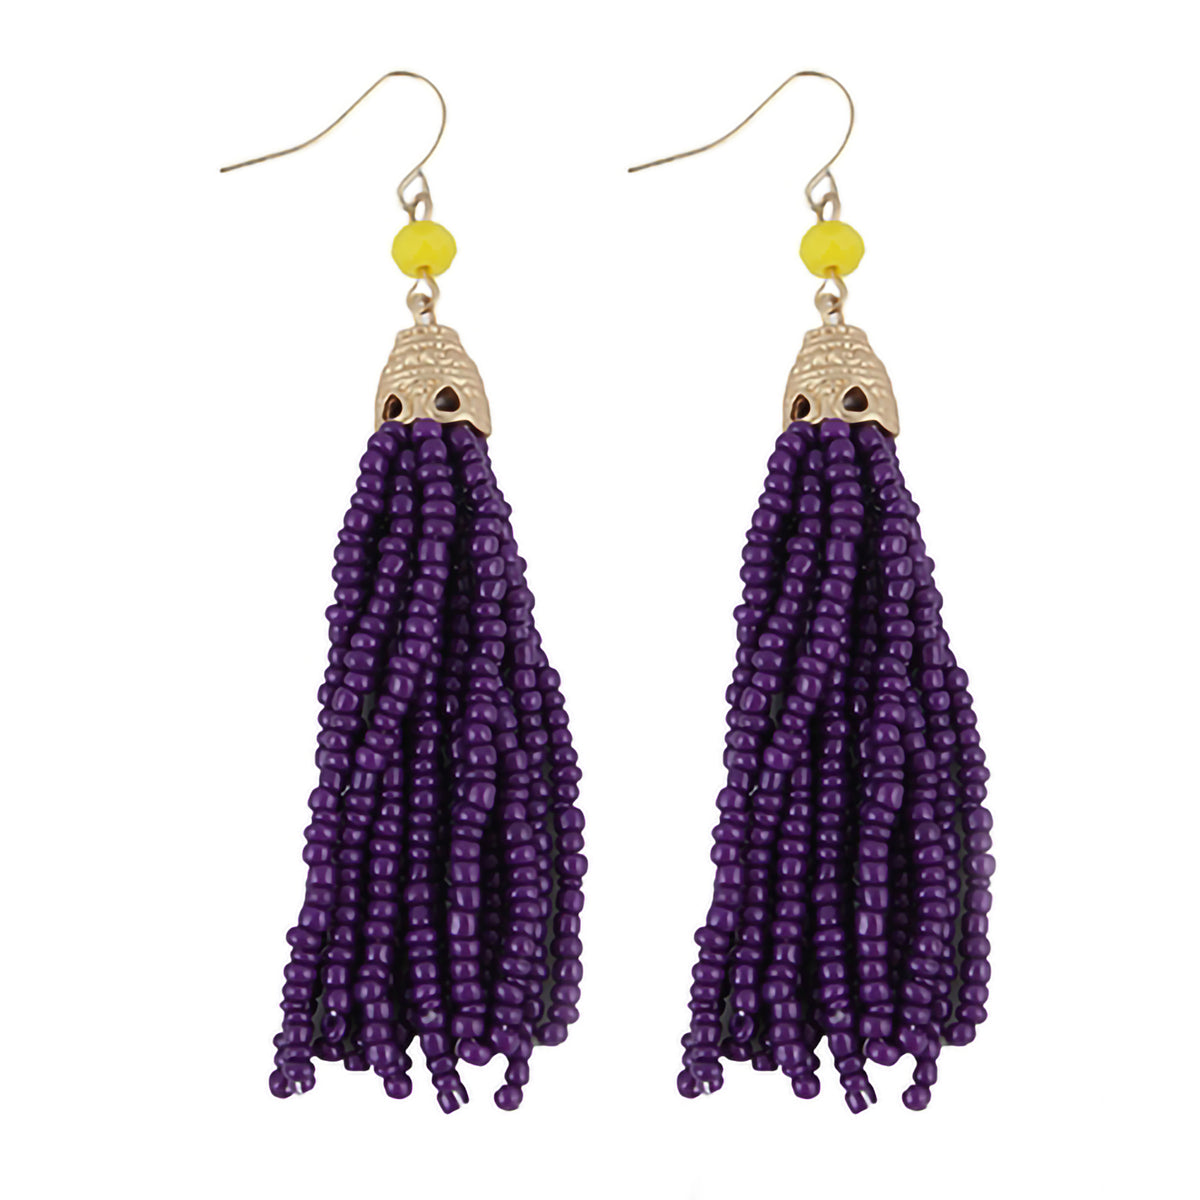 73415 - Beaded Tassel Earrings - Purple - Fashion Jewelry Wholesale